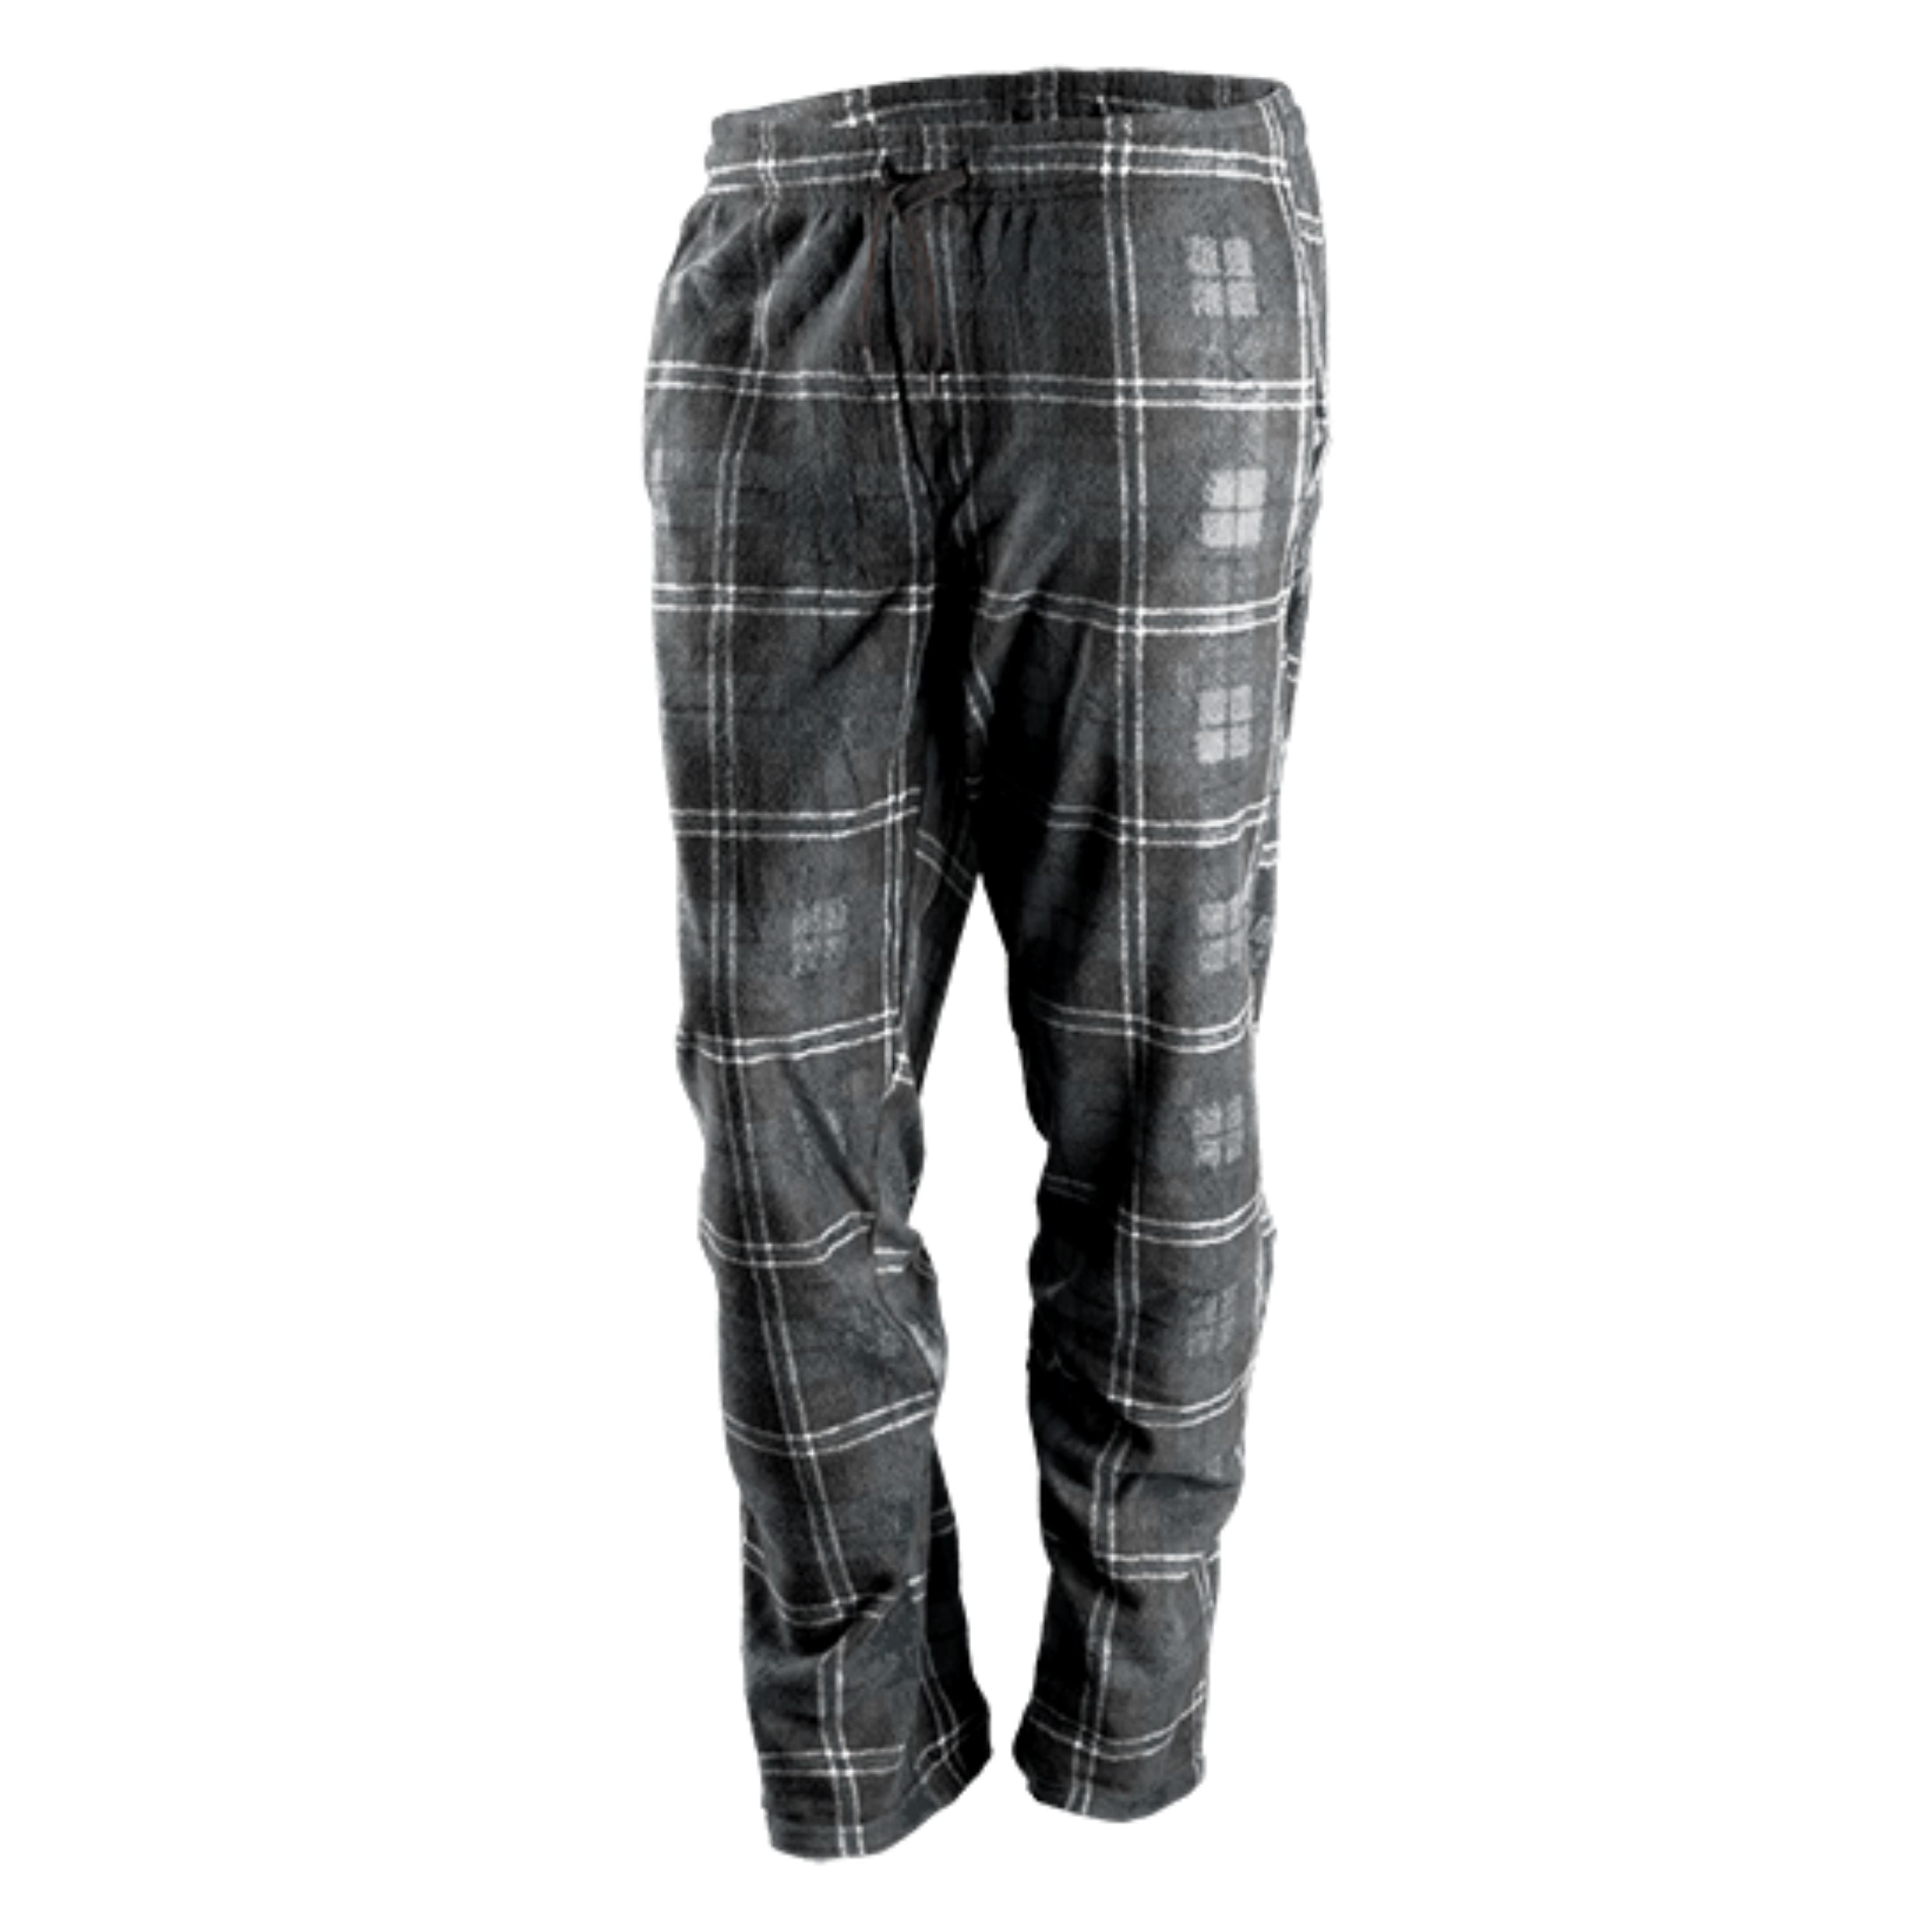 Pantalon pyjama à carreaux "Wood Camp" - Homme||"Wood Camp" Fleece lounge pants - Men's